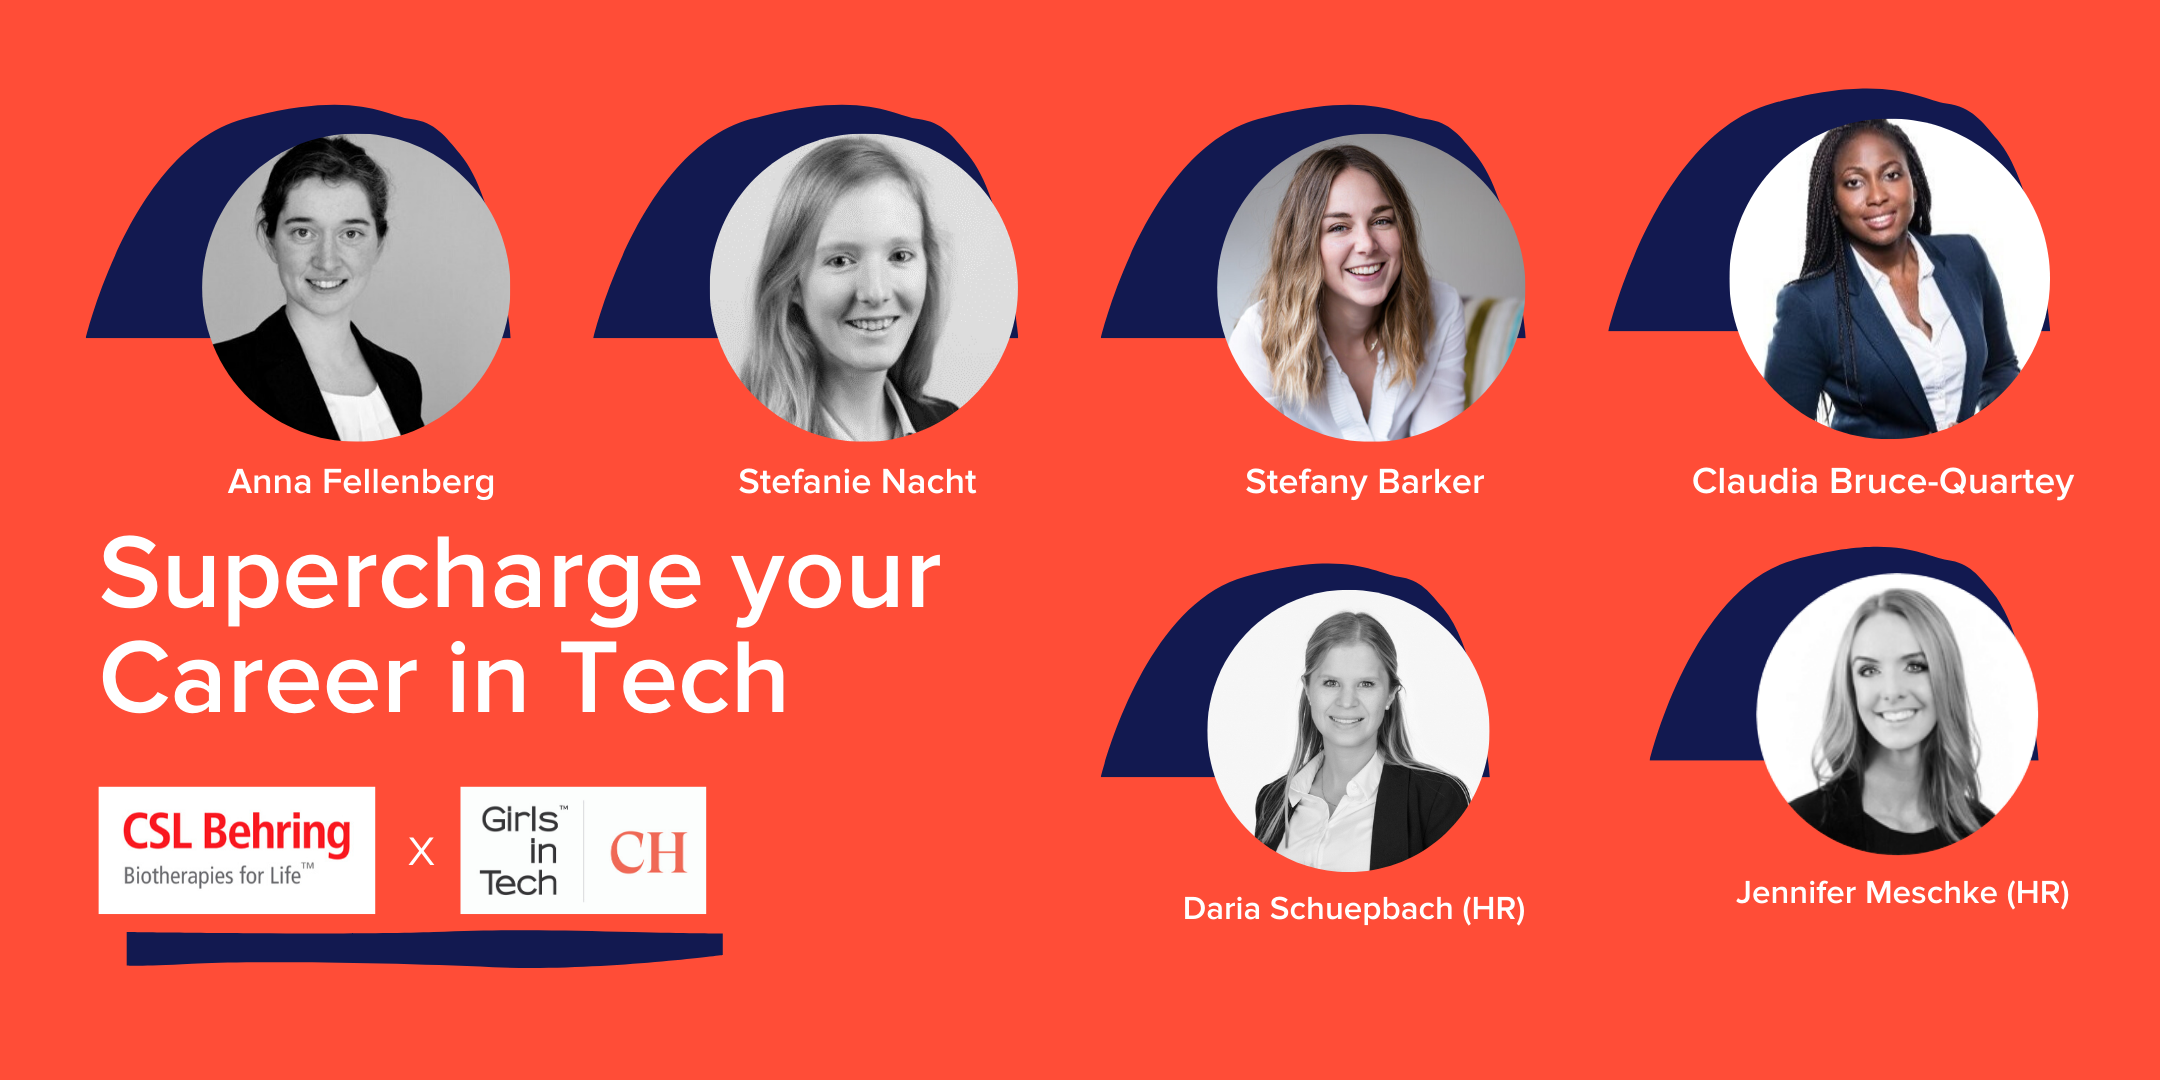 4 amazing women in tech